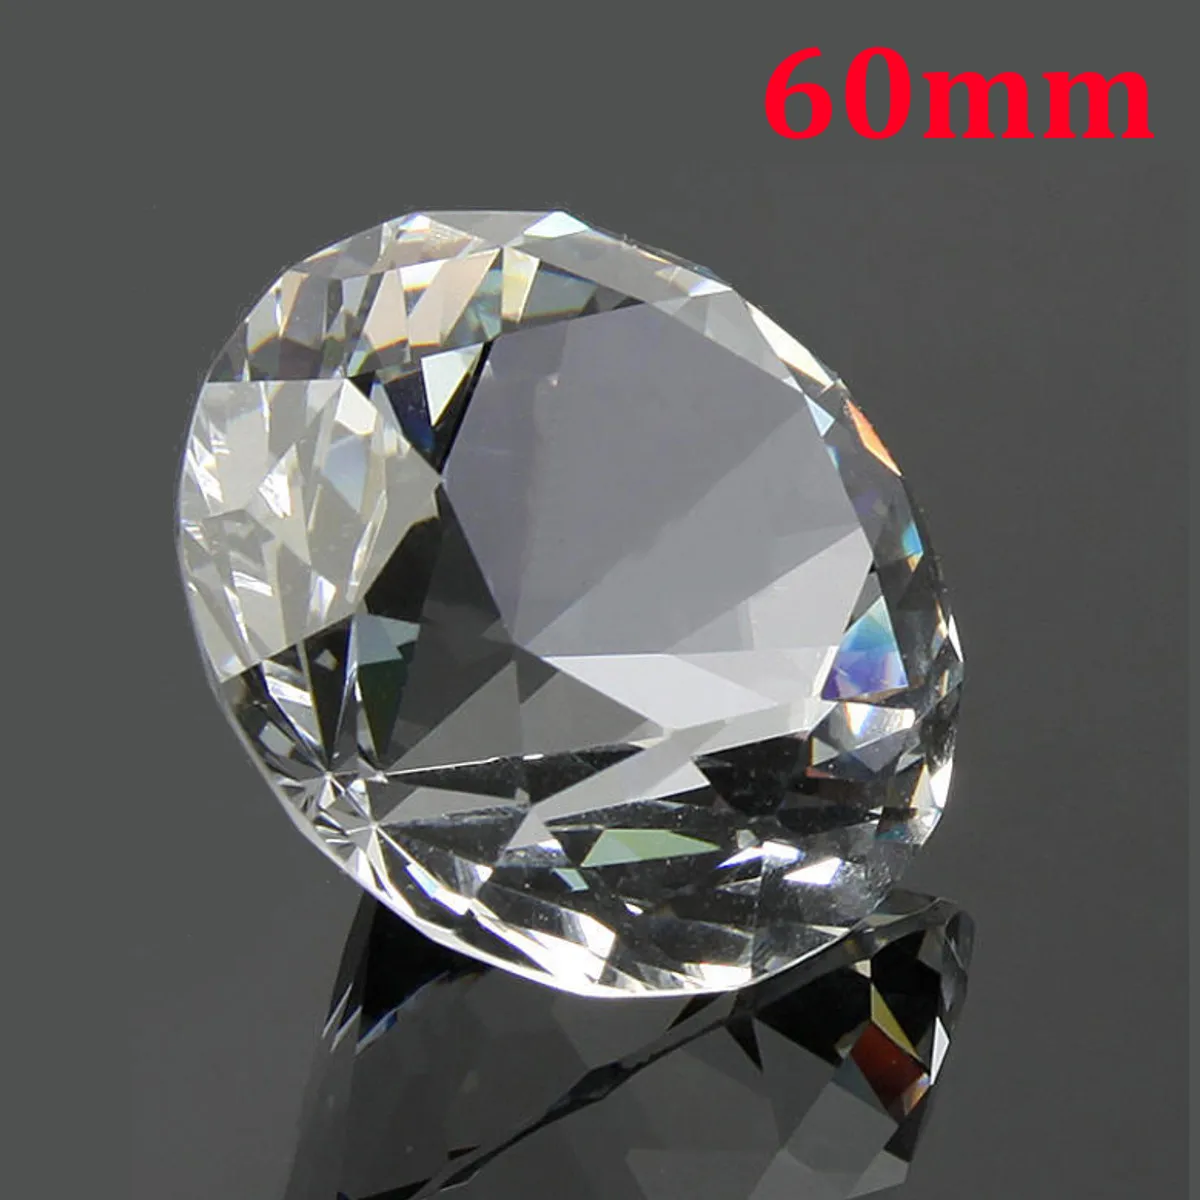 60 мм прозрачный большой K9 кристалл алмаз стекло домашнего искусства пресс-папье ремесло драгоценные камни декор свадебный орнамент коллекция фэн-шуй подарок